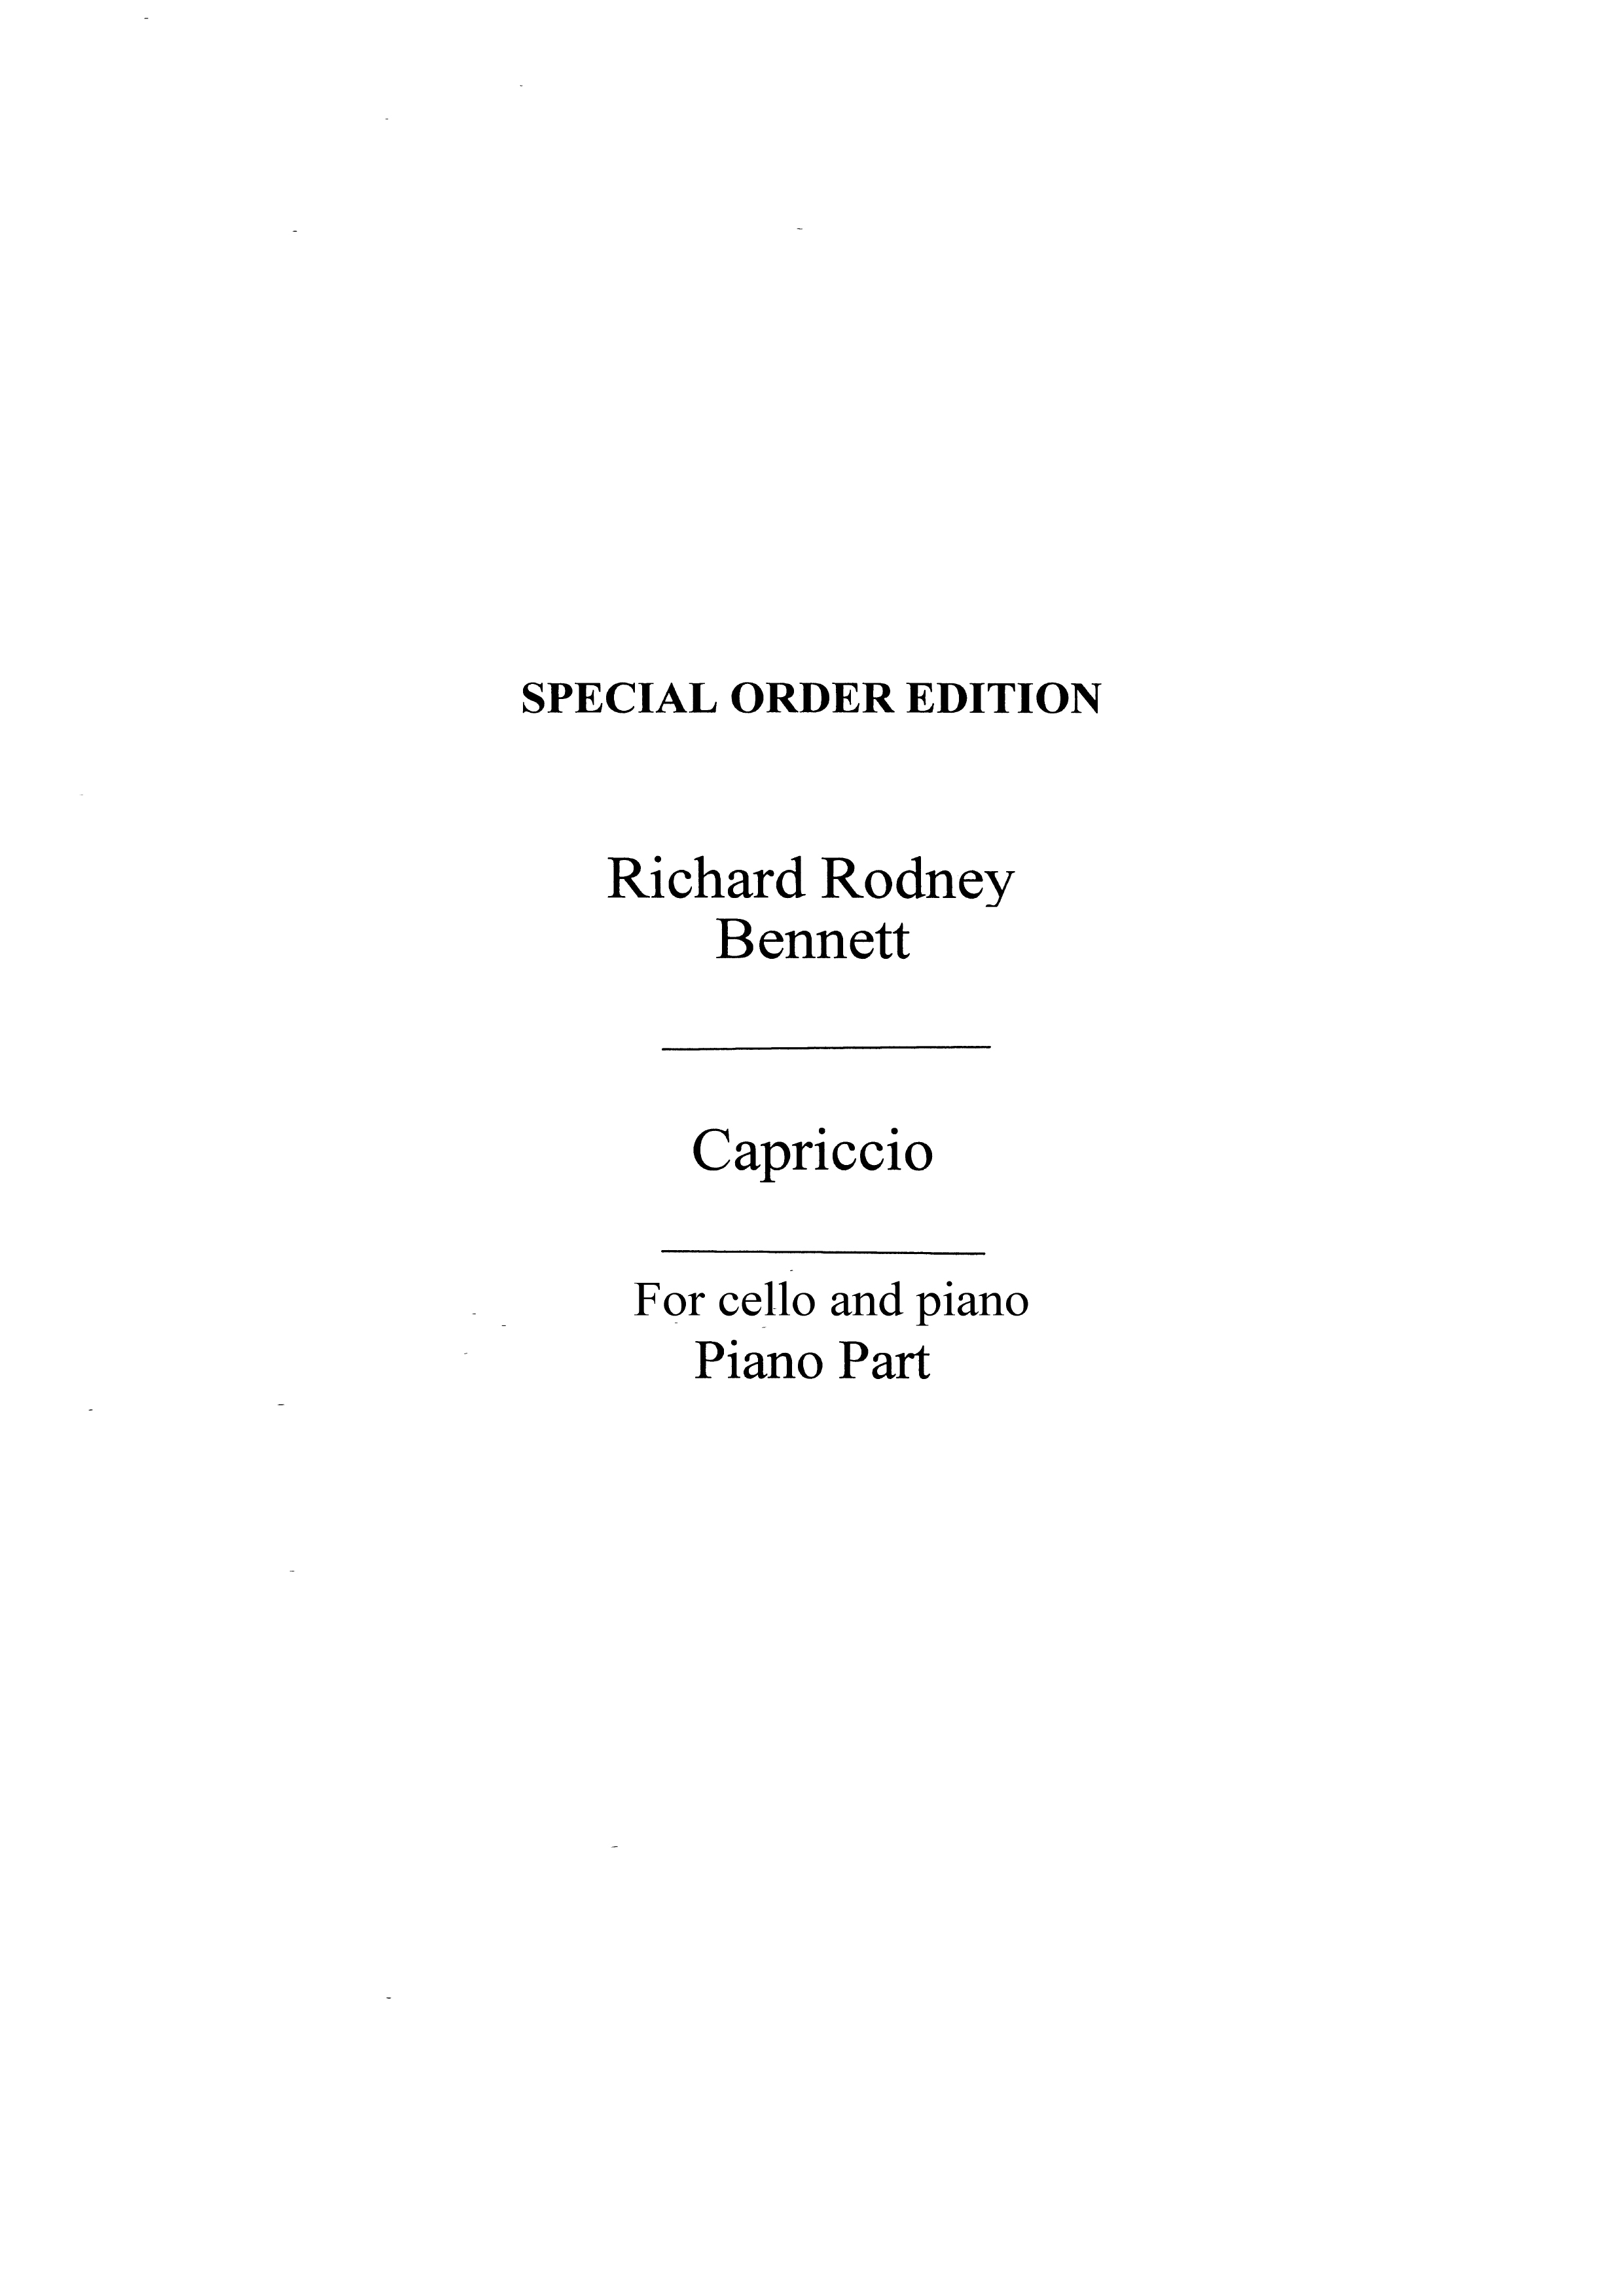 Richard Rodney Bennett: Capriccio for Cello and Piano accompaniment: Cello: